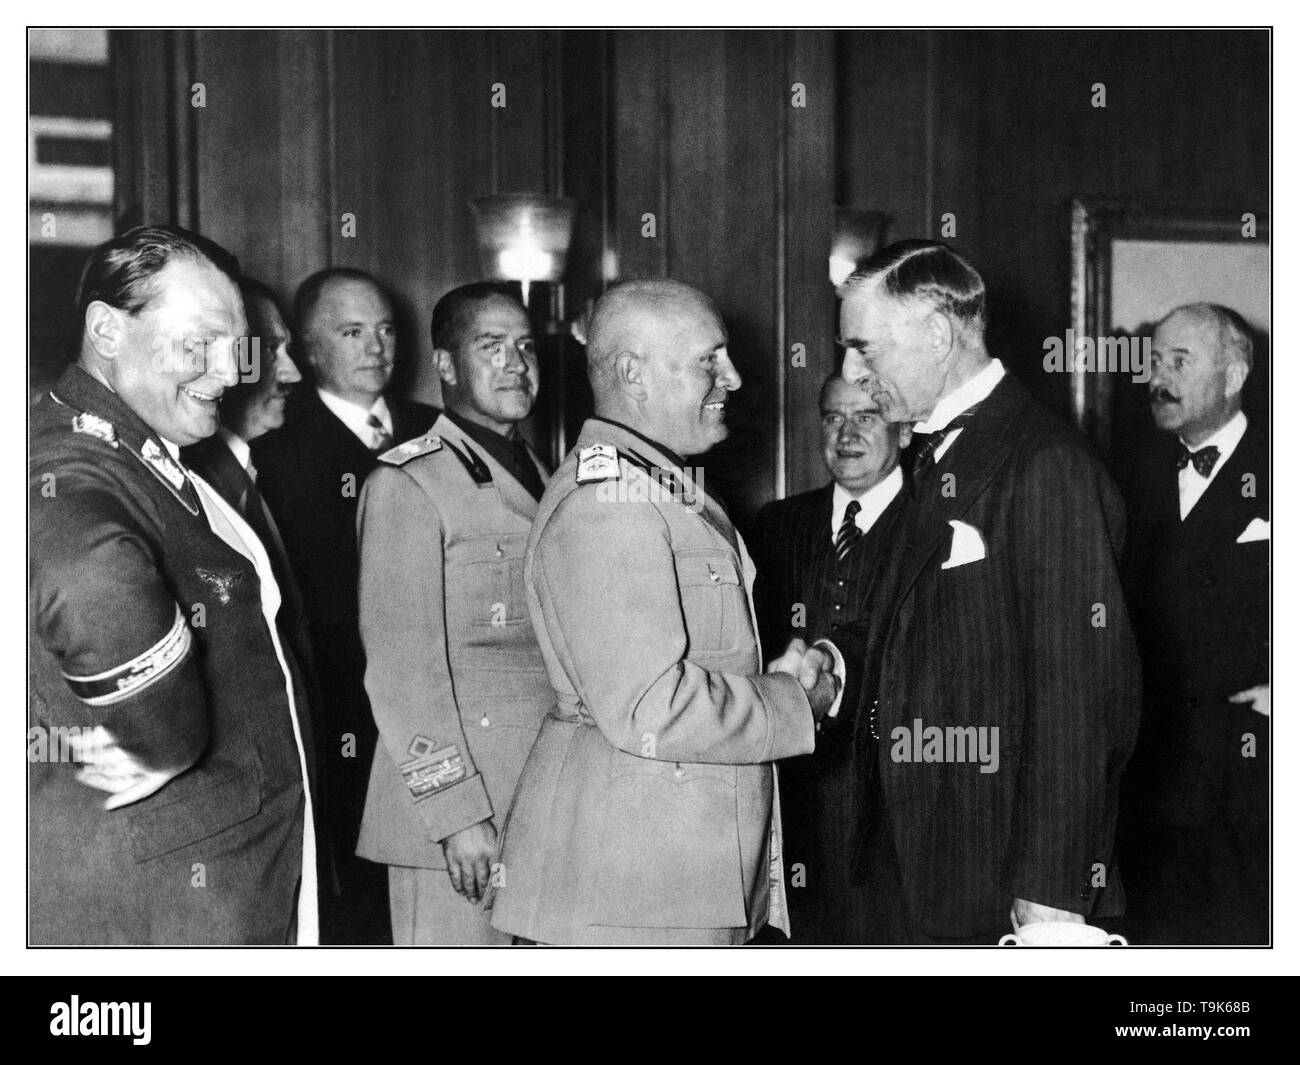 Accordo di Monaco di Baviera 1938 storica immagine di Neville Chamberlain stringono le mani con Benito Mussolini, con sorridente Nazi Hermann Goering & Adolf Hitler dietro alla firma dell'accordo di Monaco di Baviera 1938, consentendo il tedesco l'annessione dei Sudeti Foto Stock